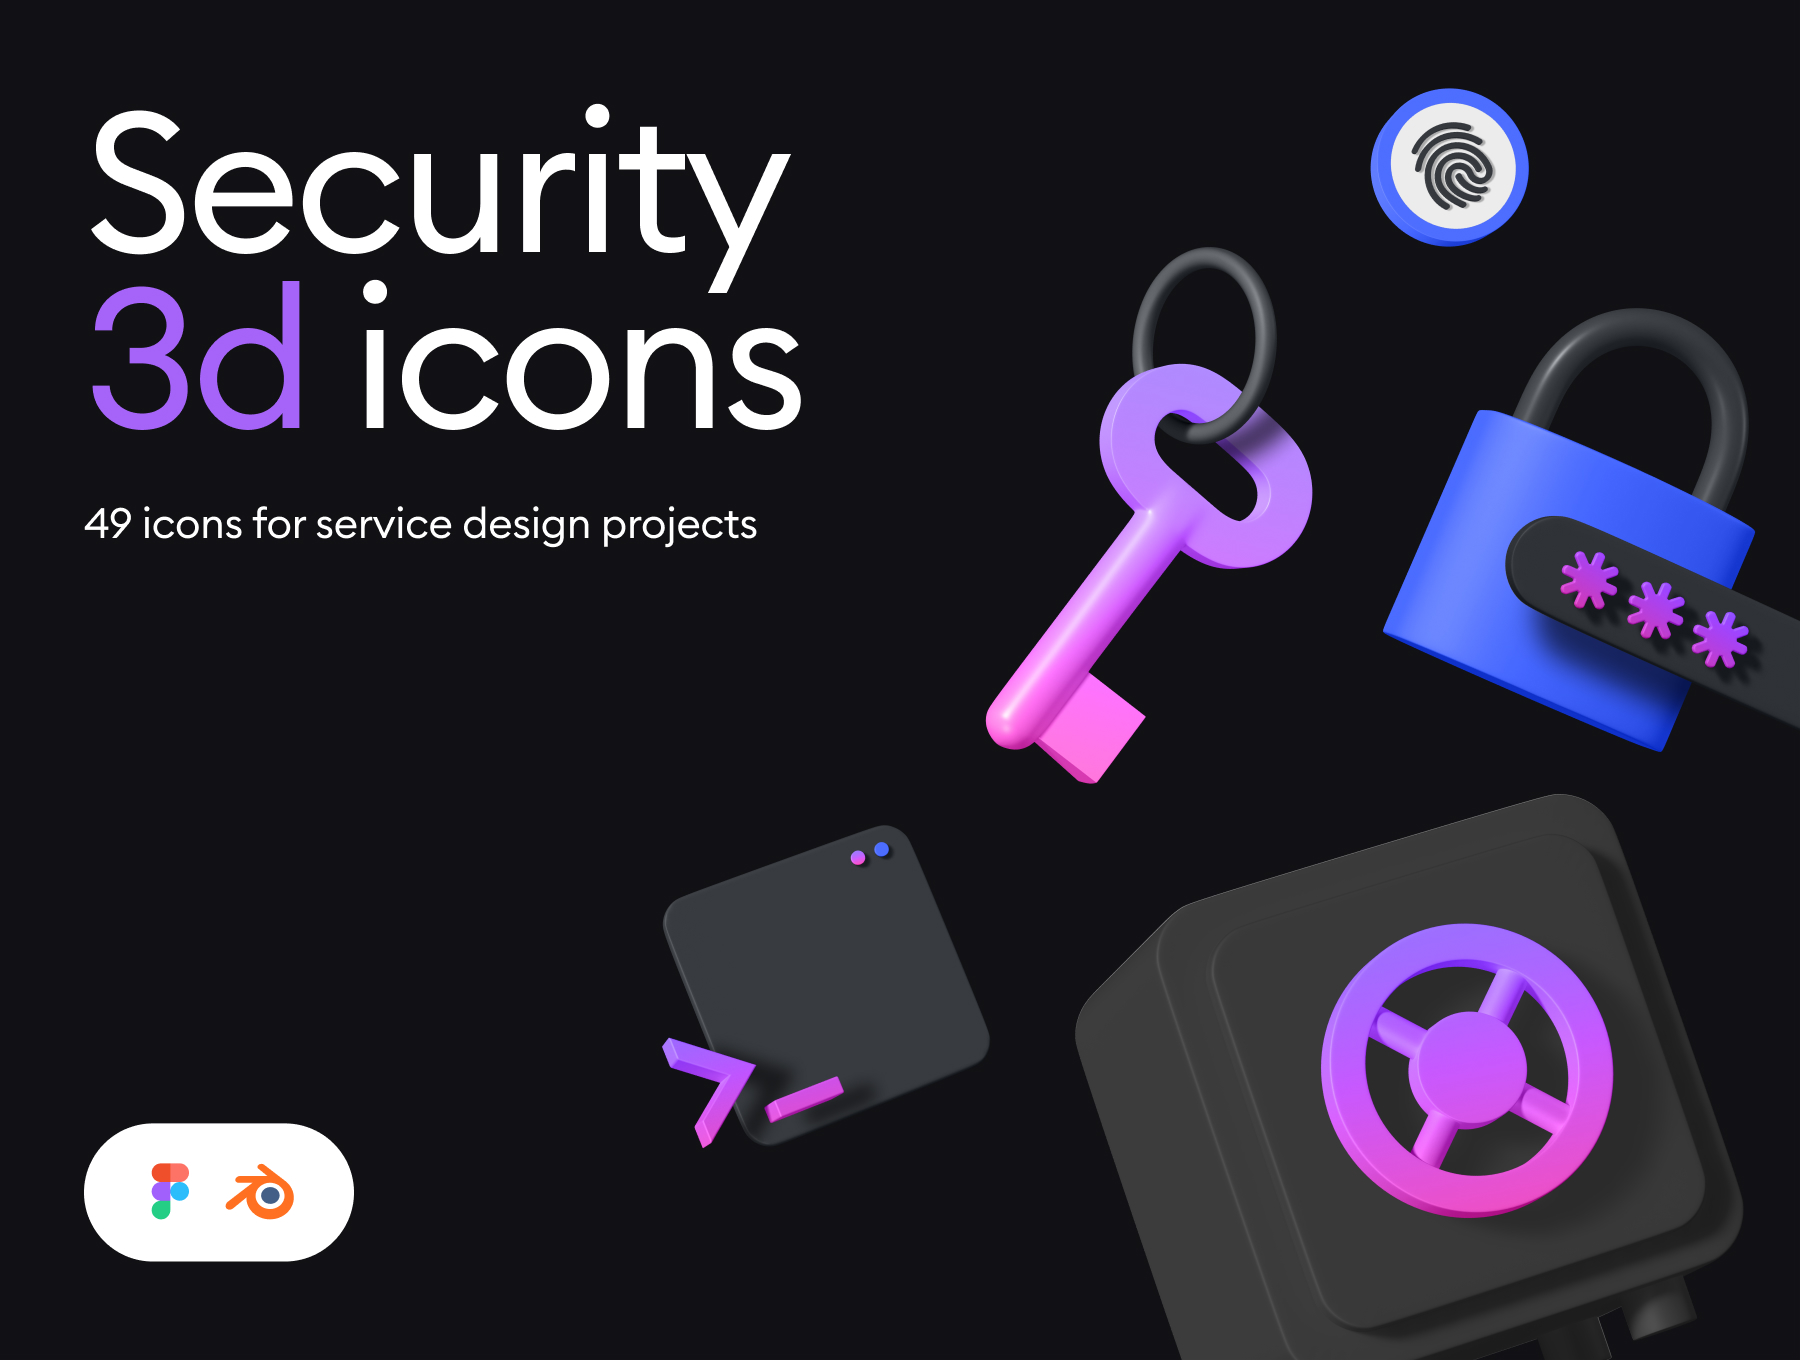 49个3D高分辨率网络安全保护加密隐私图标套件 Security 3d icon kit 图标素材 第1张